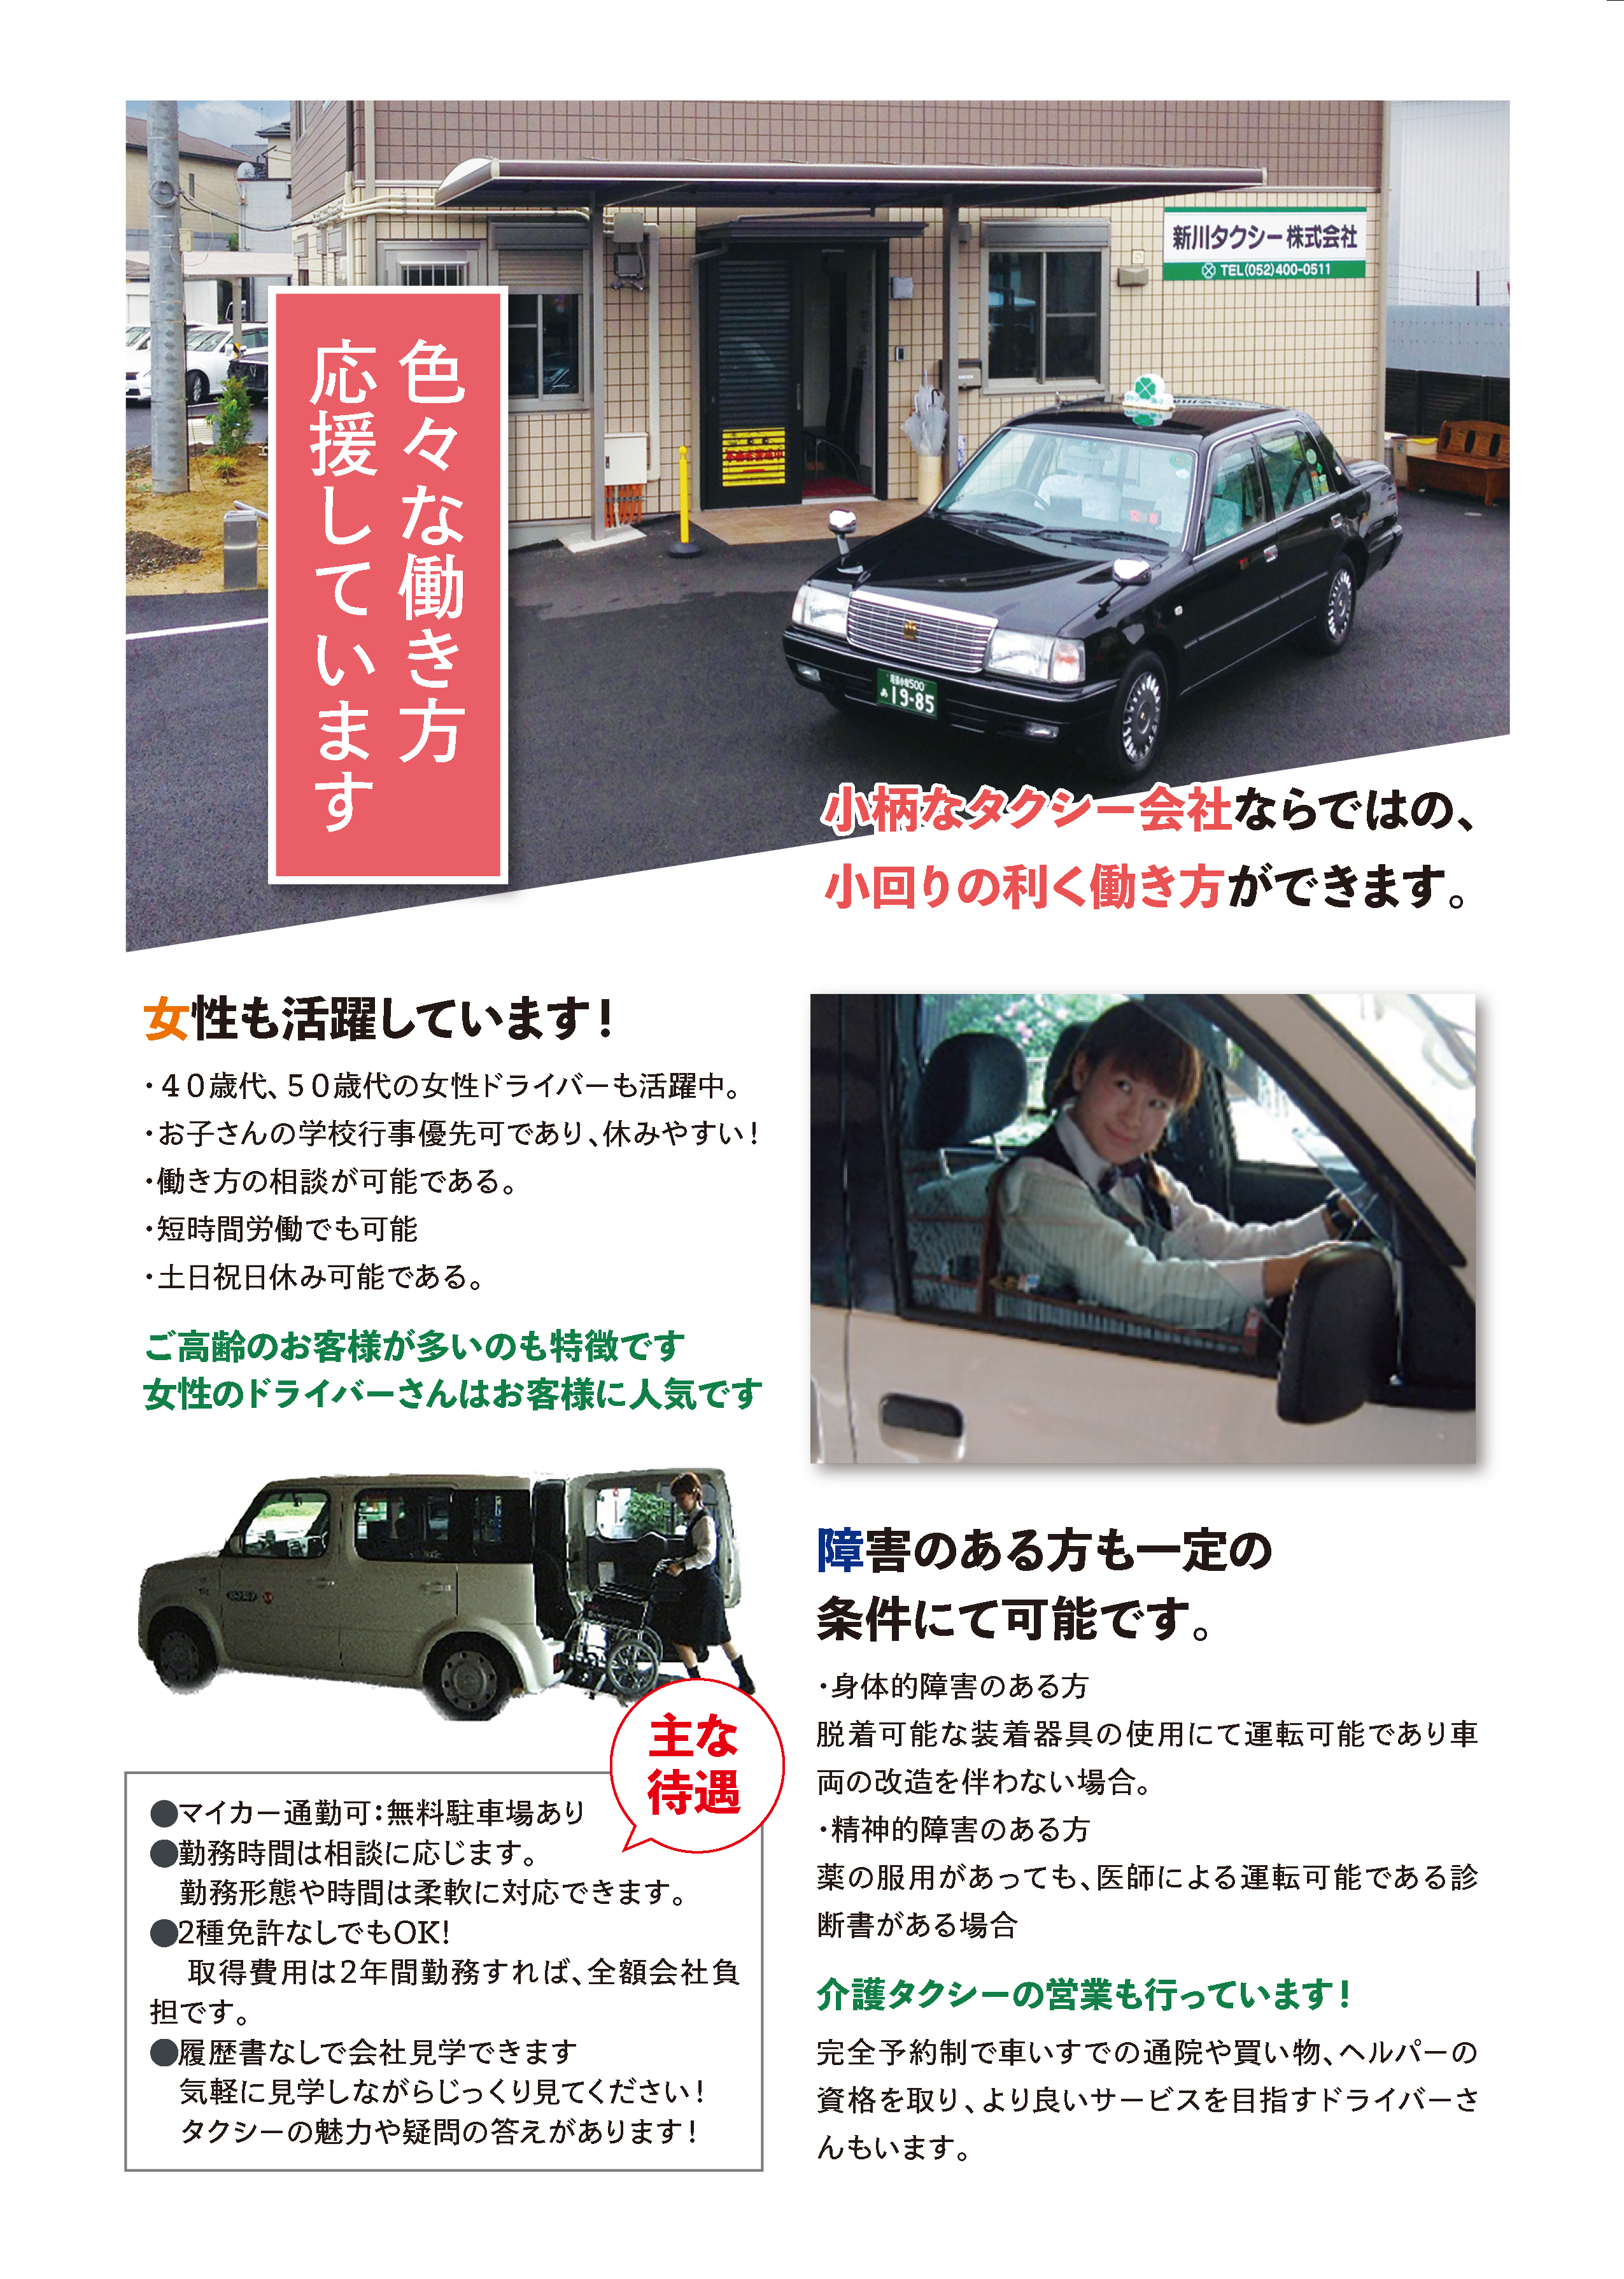 新川タクシー乗務員採用情報